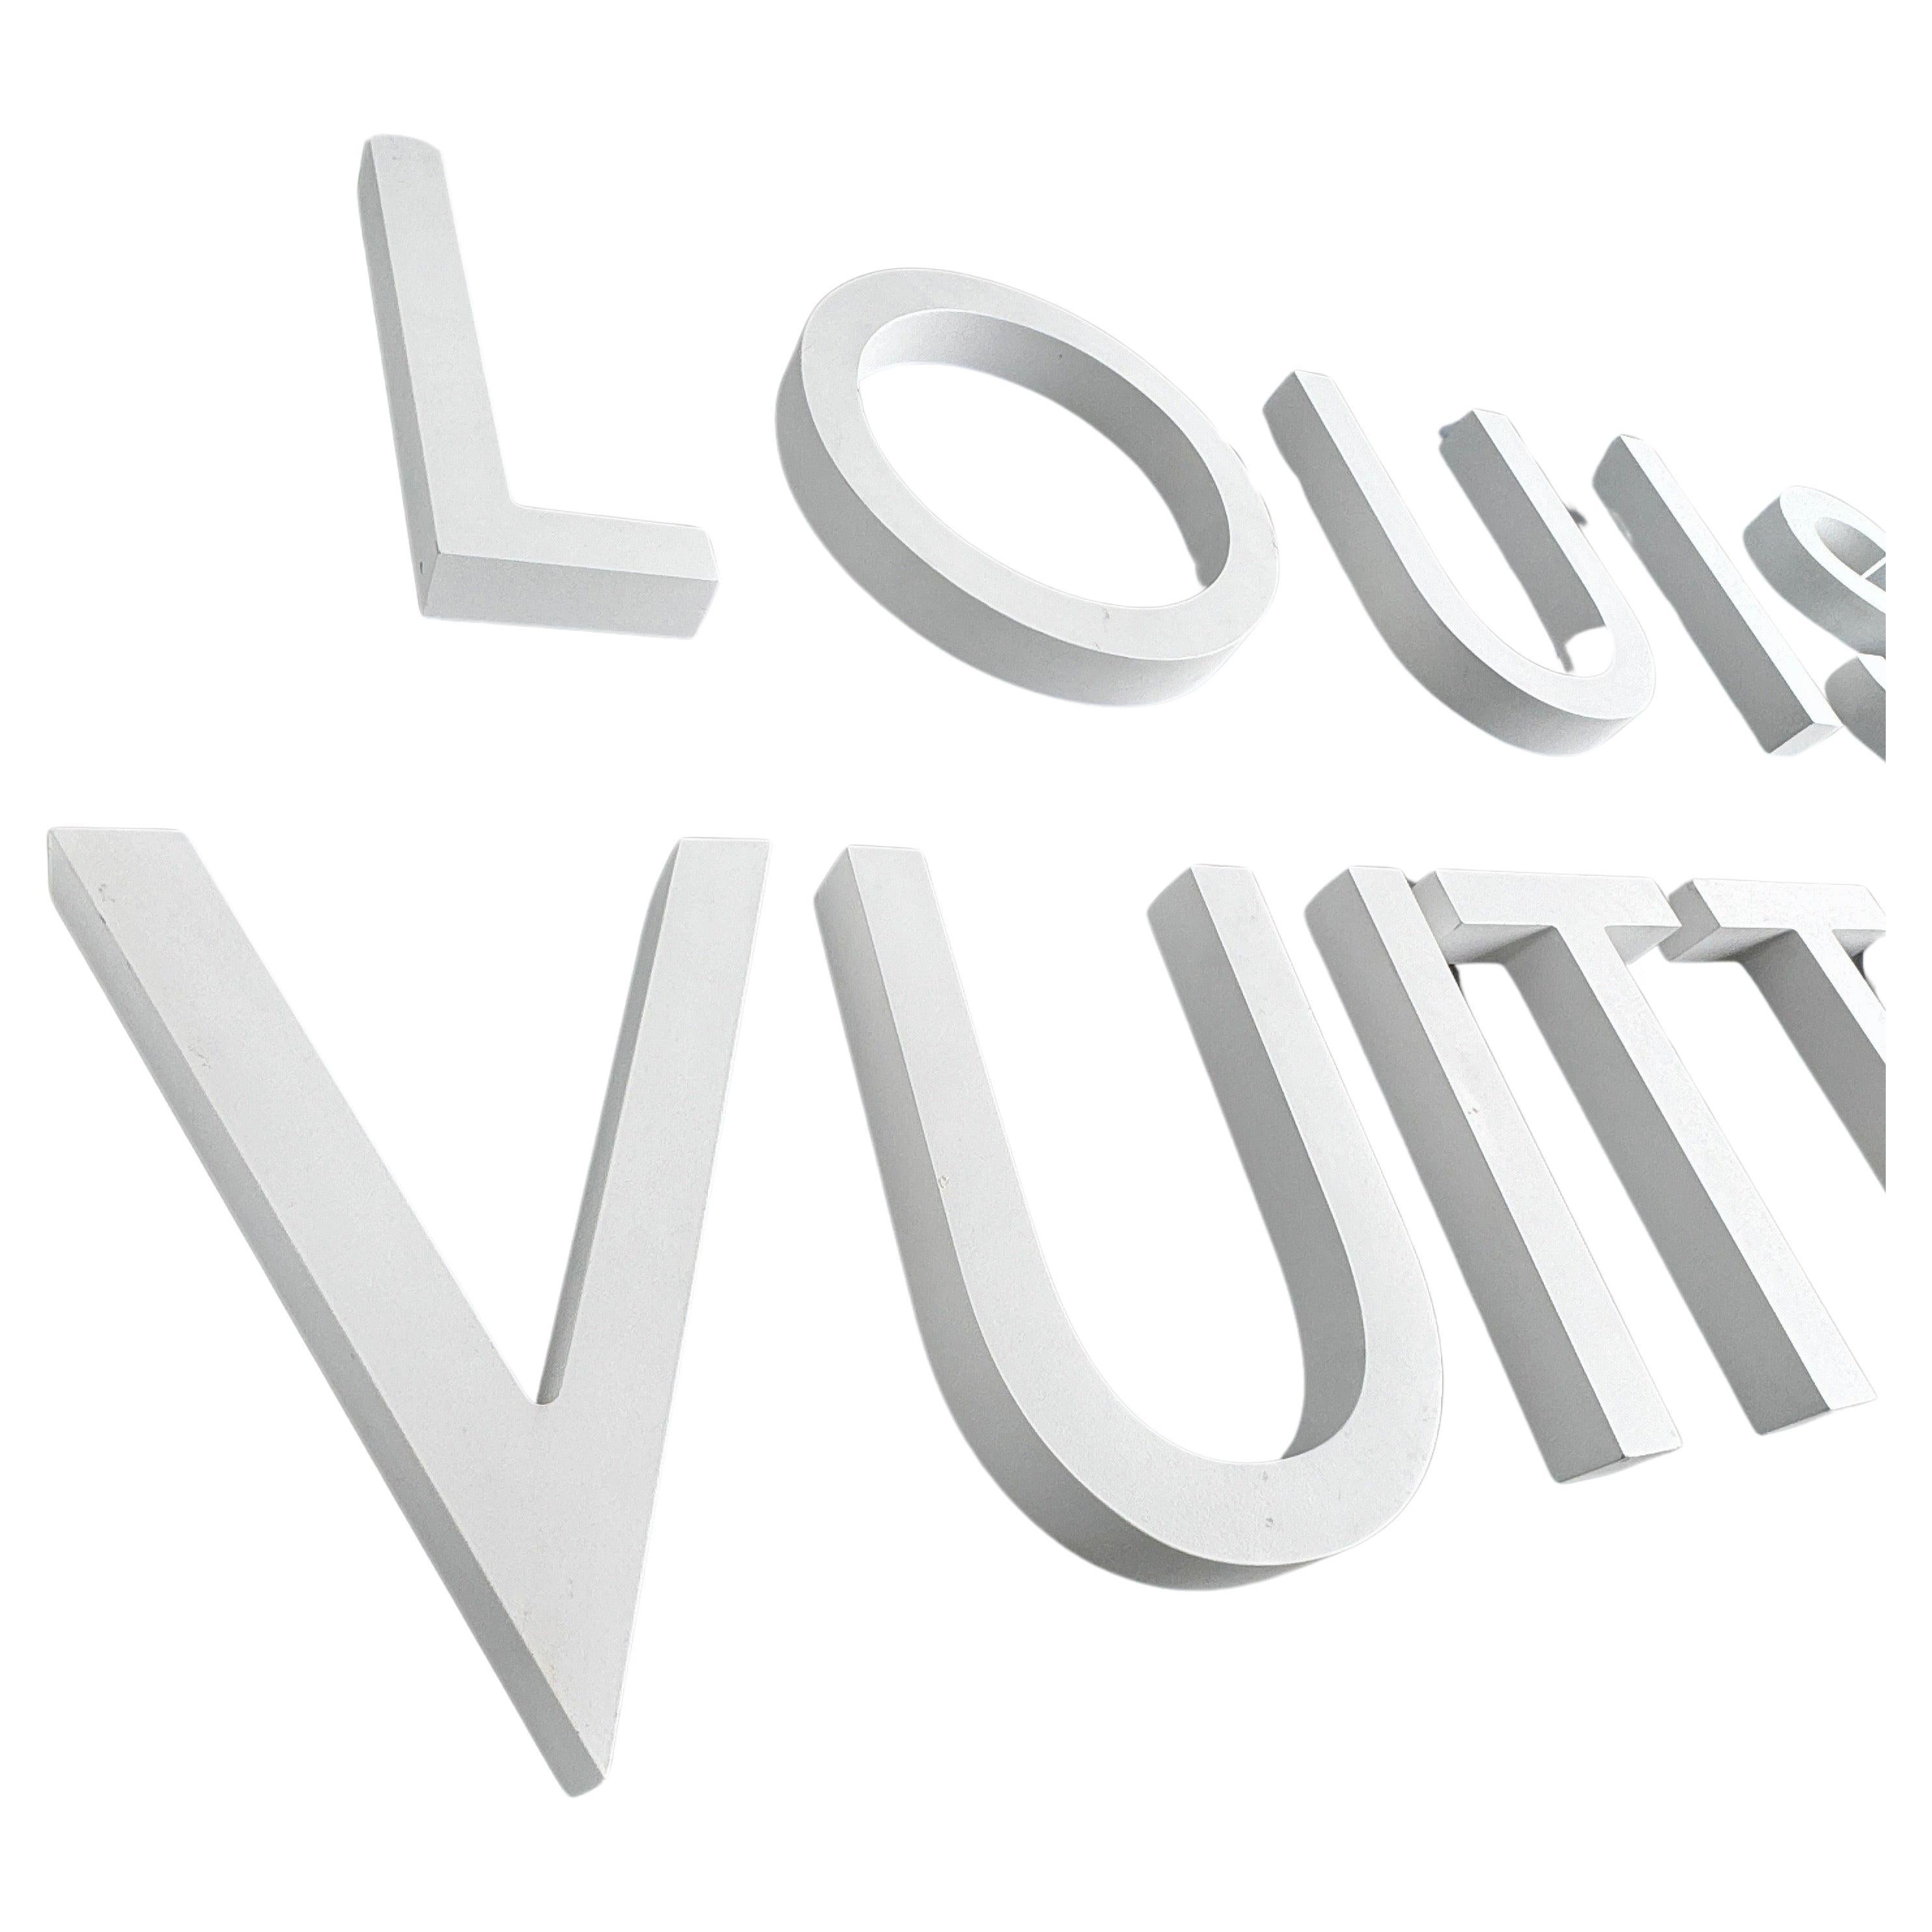 Louis Vuitton Buchstabensatz aus LV Store Display

Dieser große Satz weißer Buchstaben stammt eigentlich aus einem Louis Vuitton-Geschäft. Diese Kollektion wäre eine bemerkenswerte Wanddekoration entweder in einem Privathaushalt oder könnte auch in